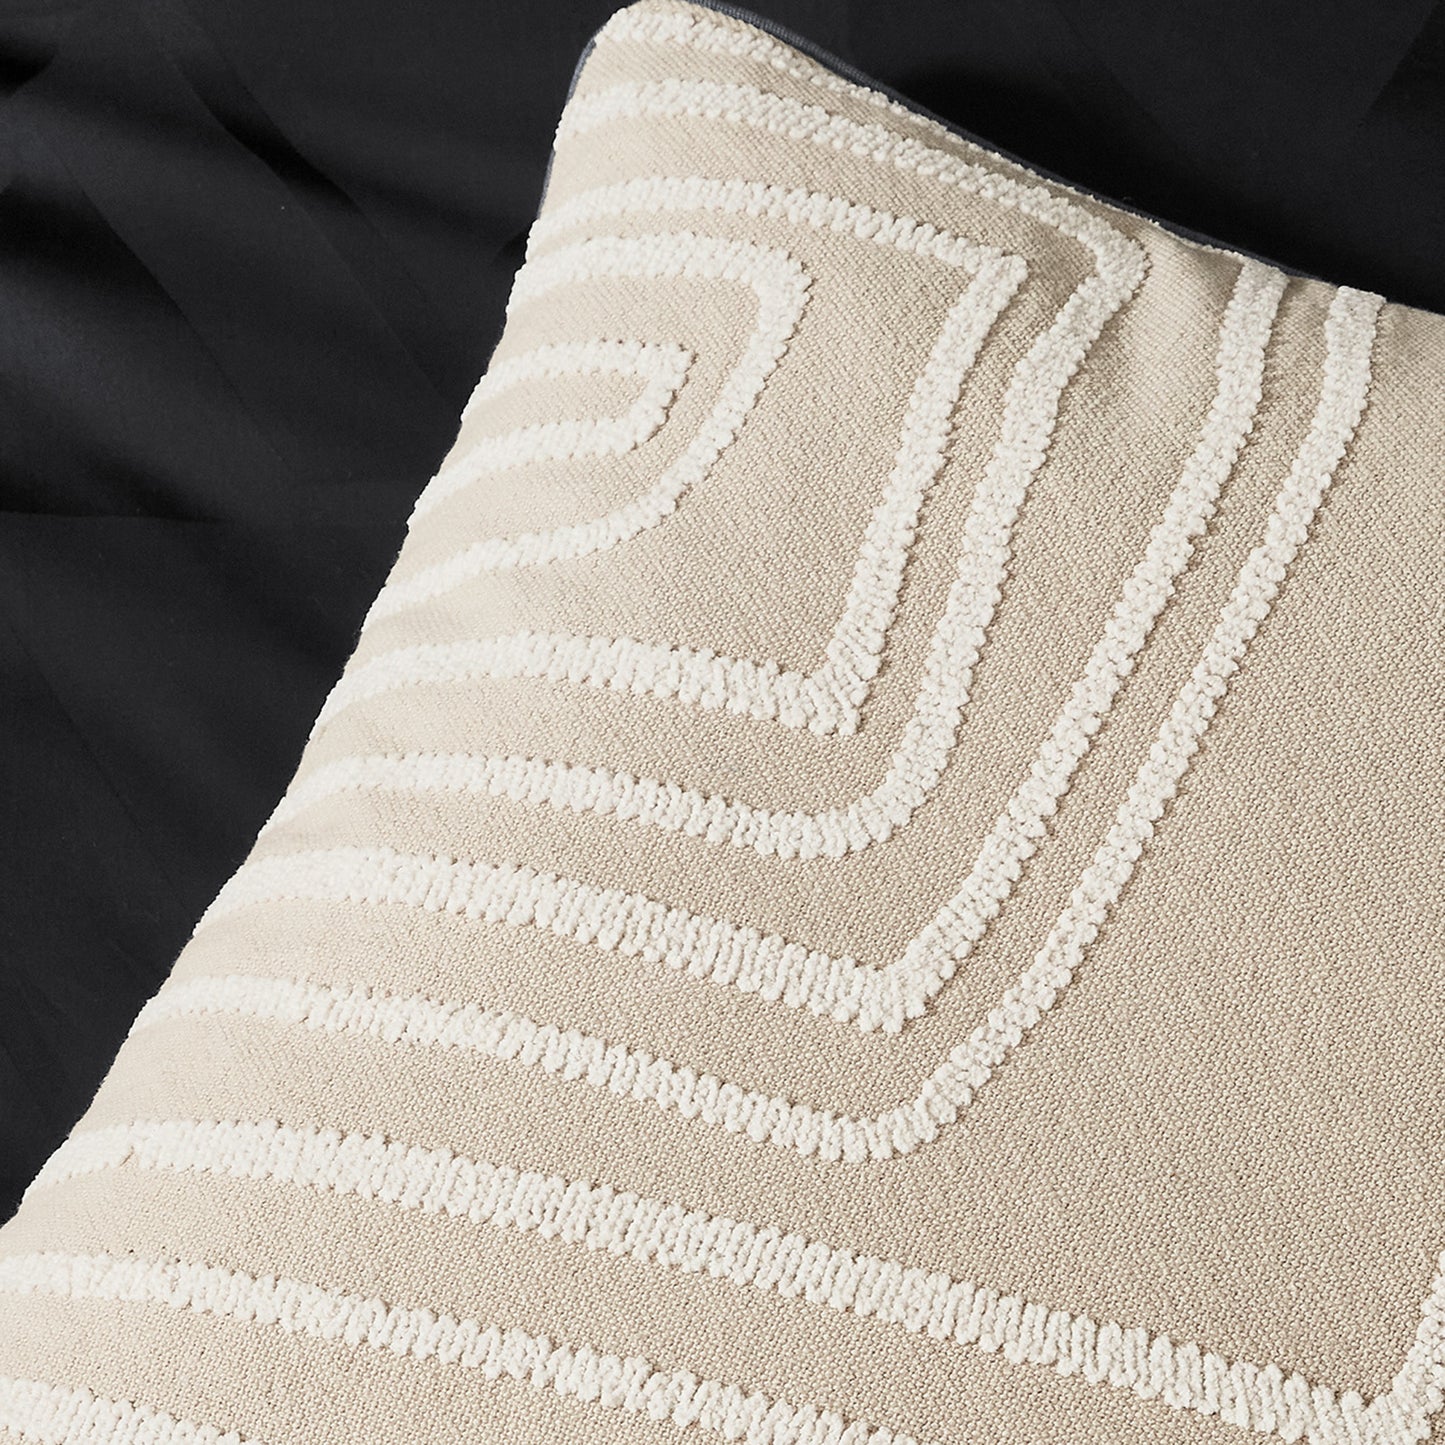 Nalu Kaia Decorative Pillow Linen